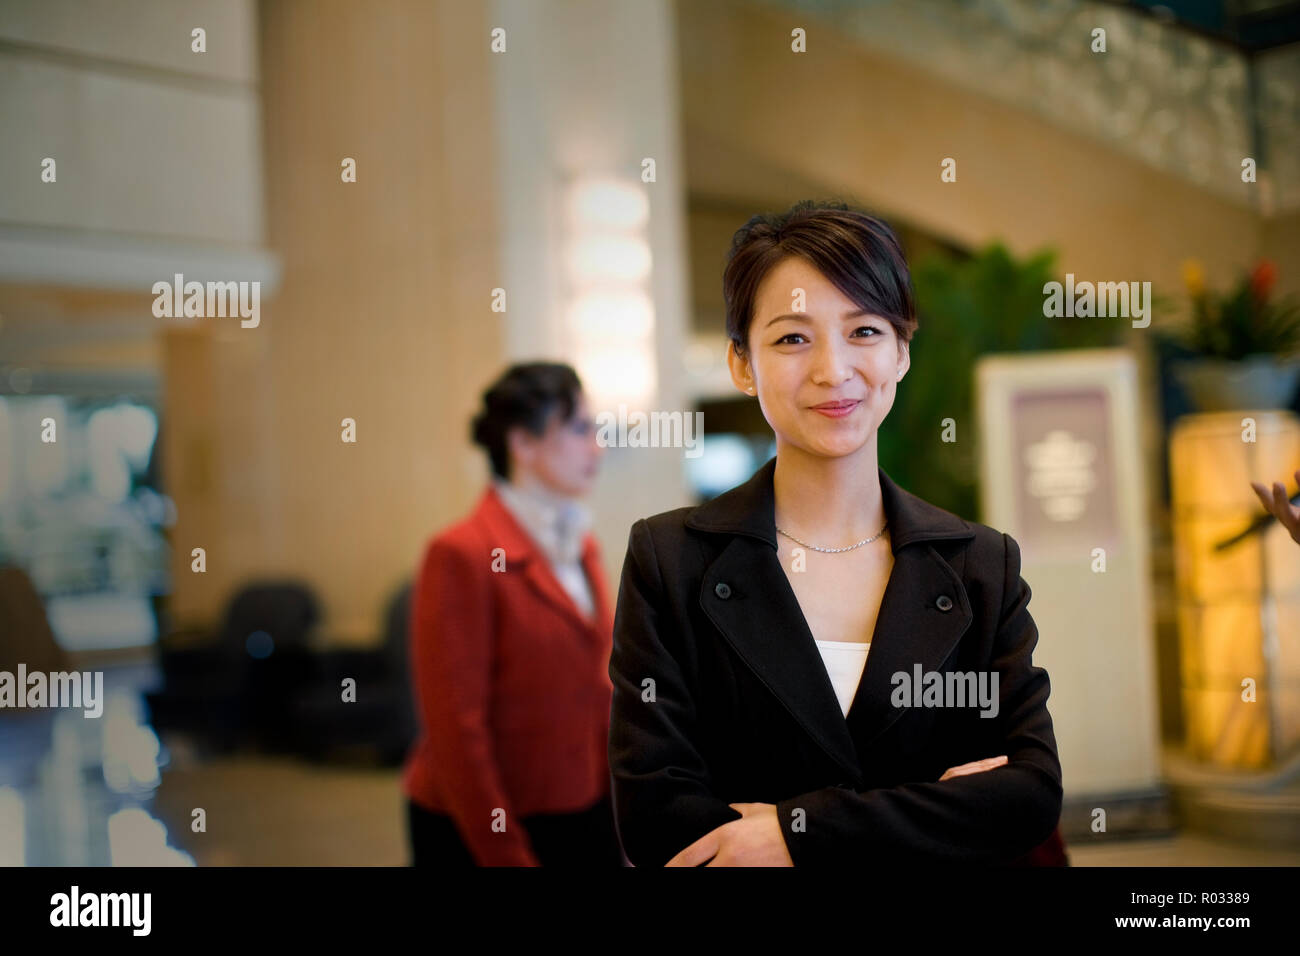 Porträt eines jungen Erwachsenen Business woman in der Lobby stehen. Stockfoto